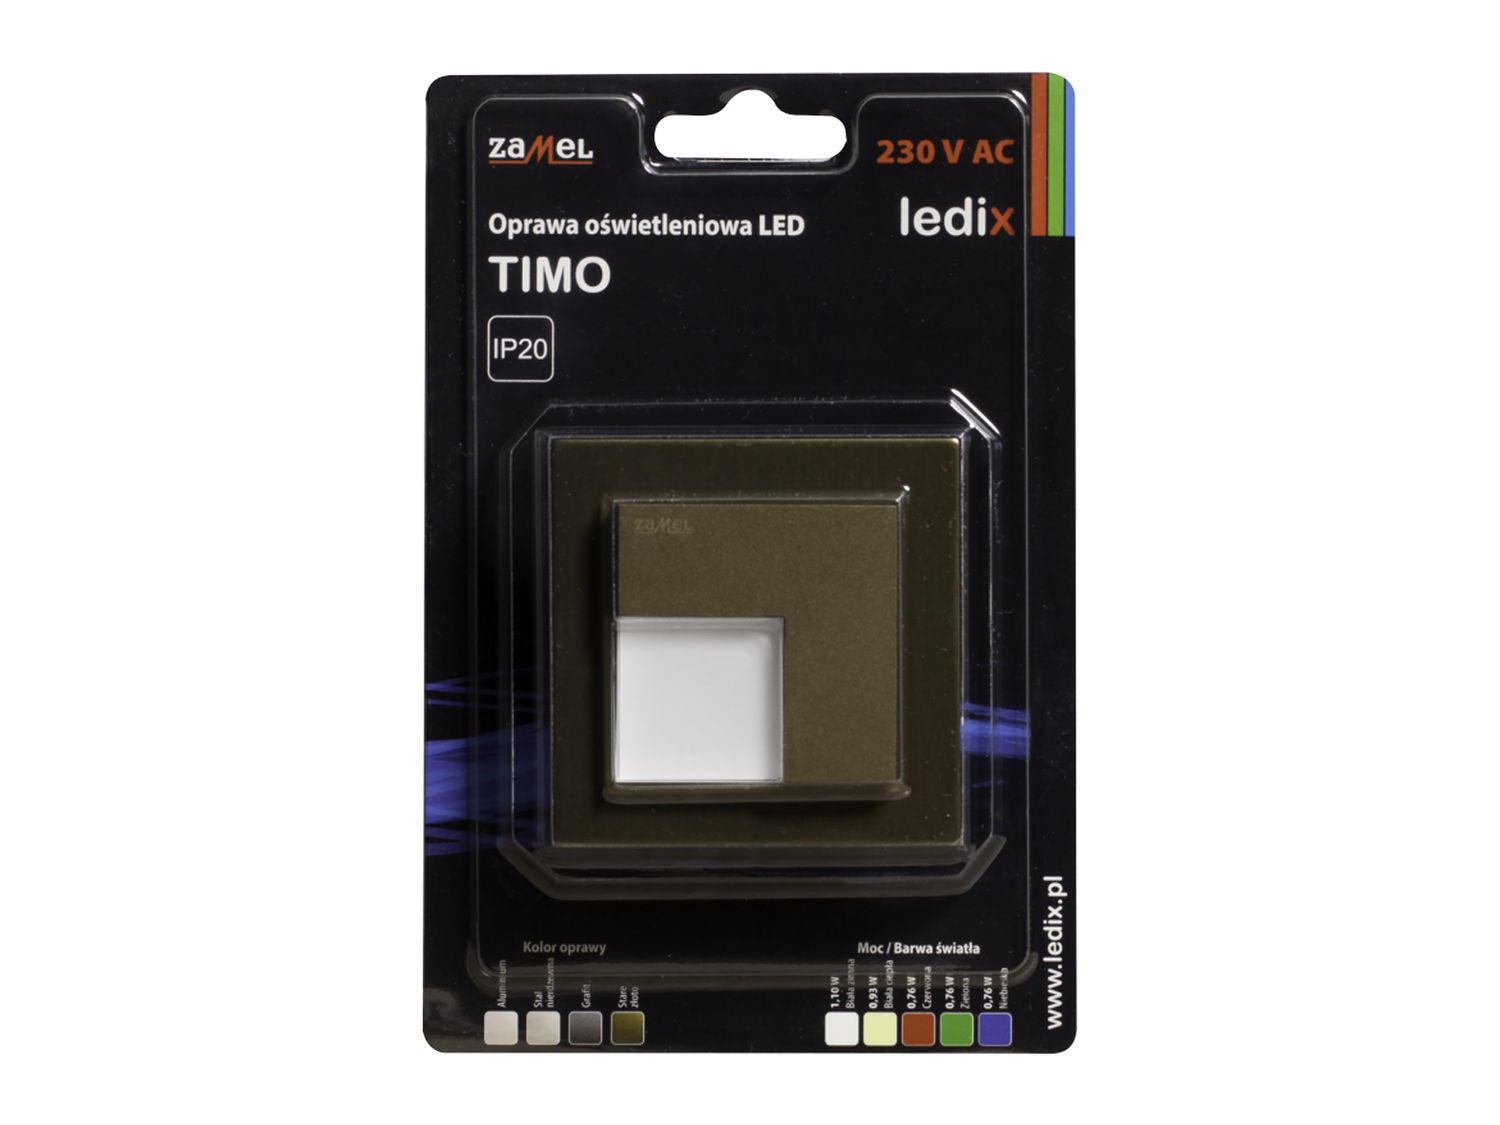 Svítidlo LED do krabice LEDIX TIMO 230V AC, zlatá patina, studená bílá, IP20